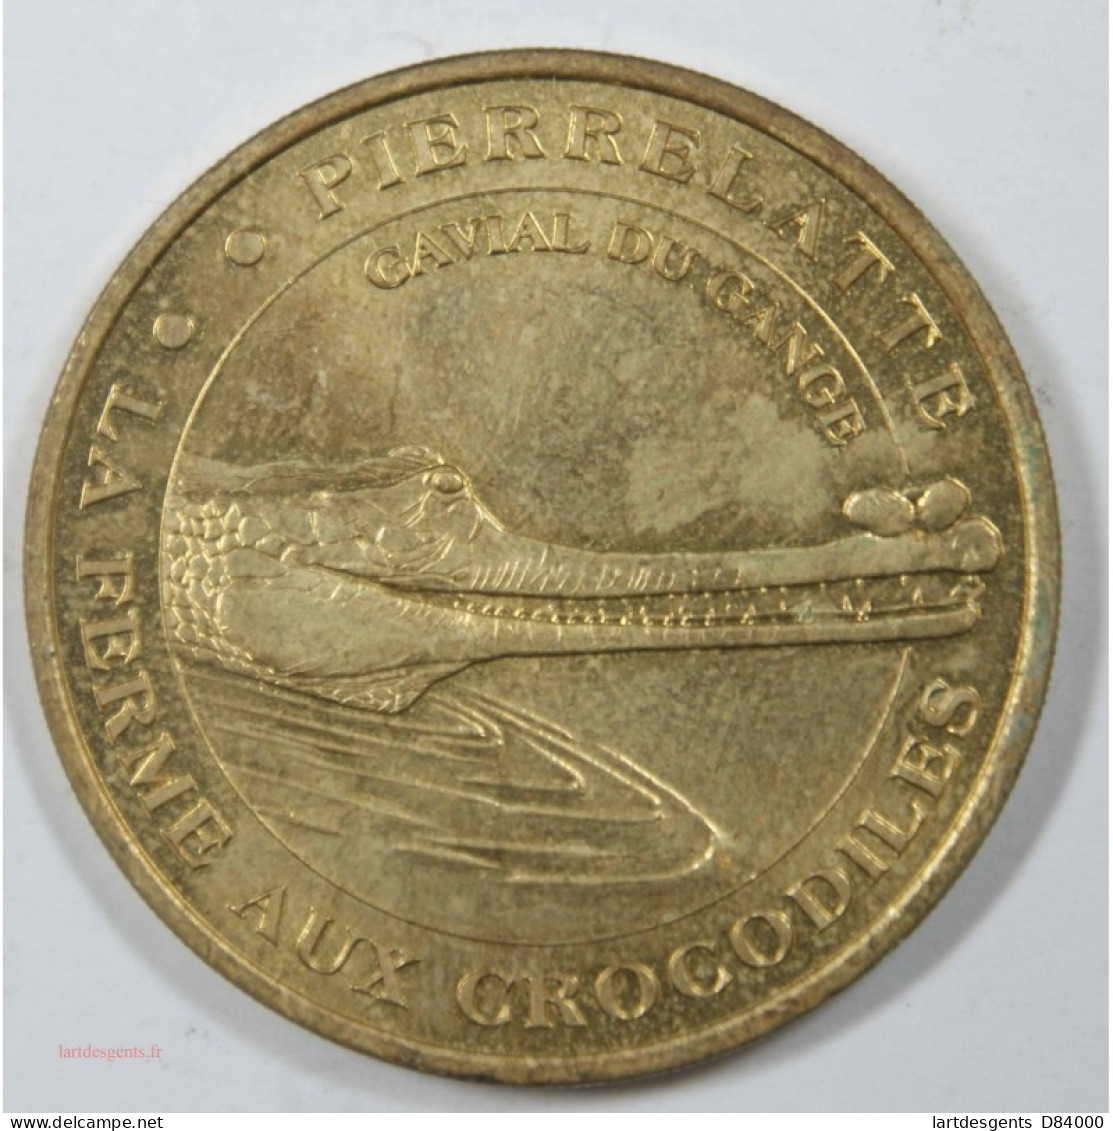 Médaille Touristique MDP - Ferme Des Crocodiles (26) 2001 - Firma's